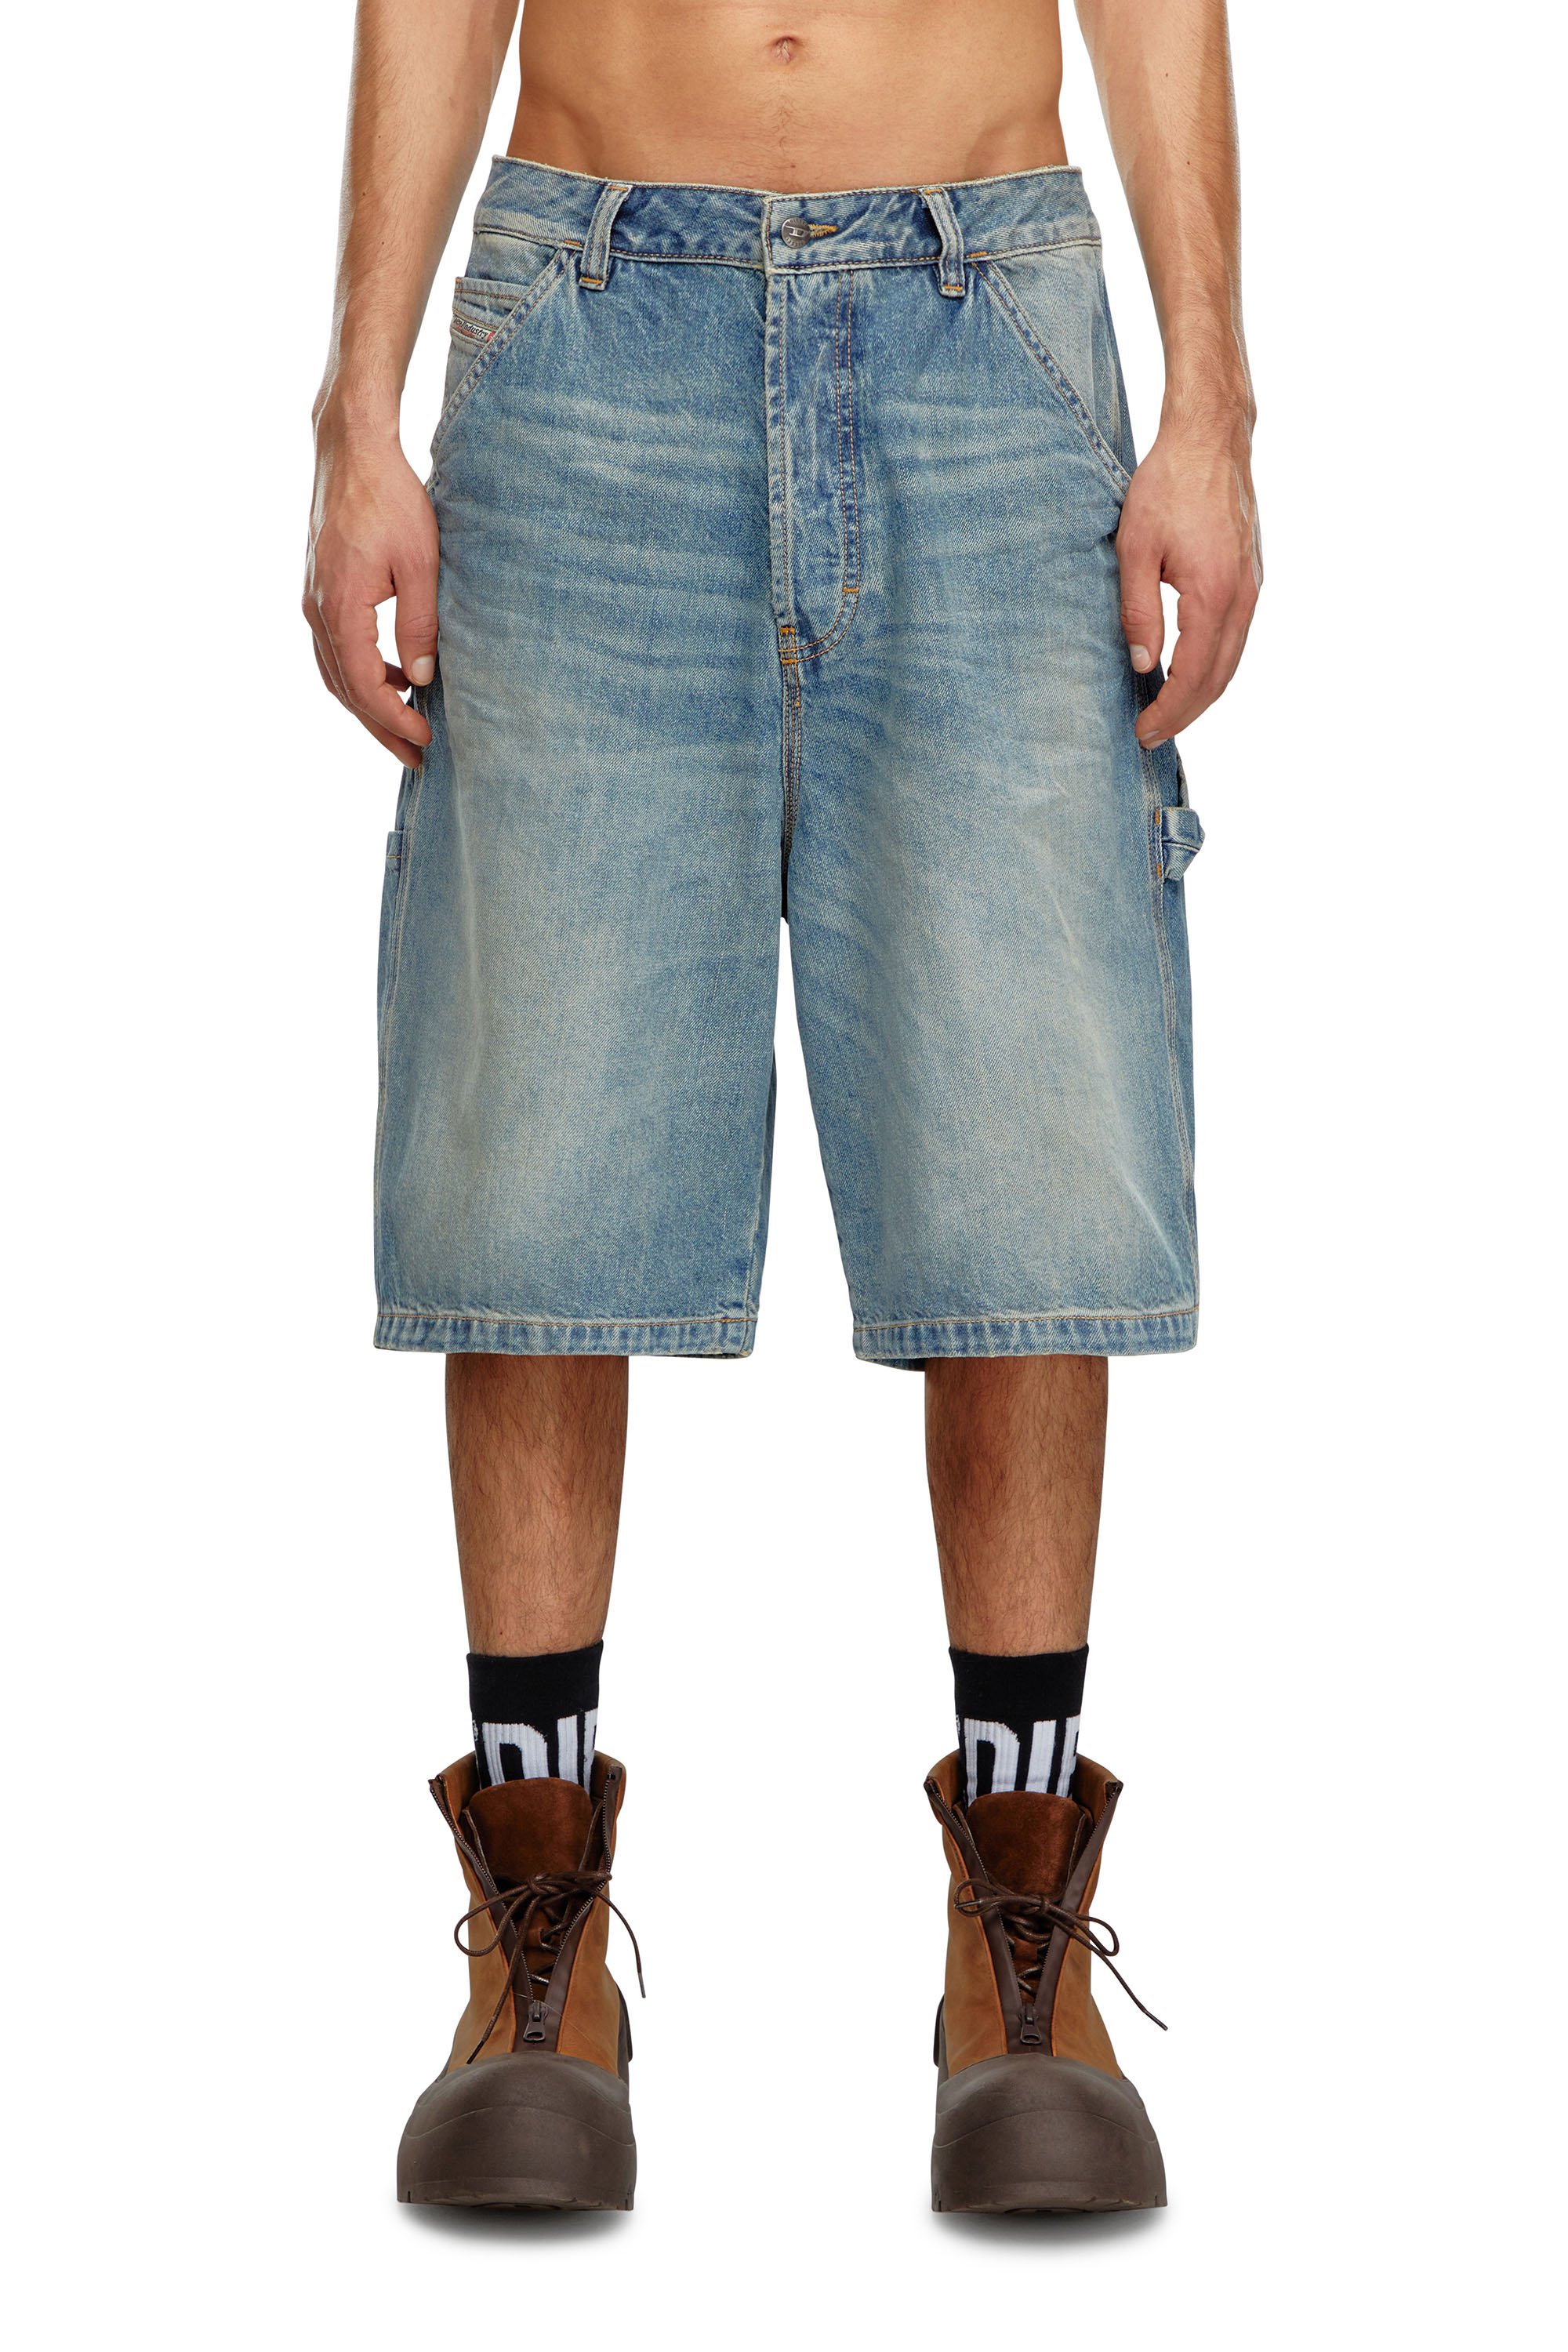 Diesel - Pantalones cortos utility en denim - Shorts - Hombre - Azul marino